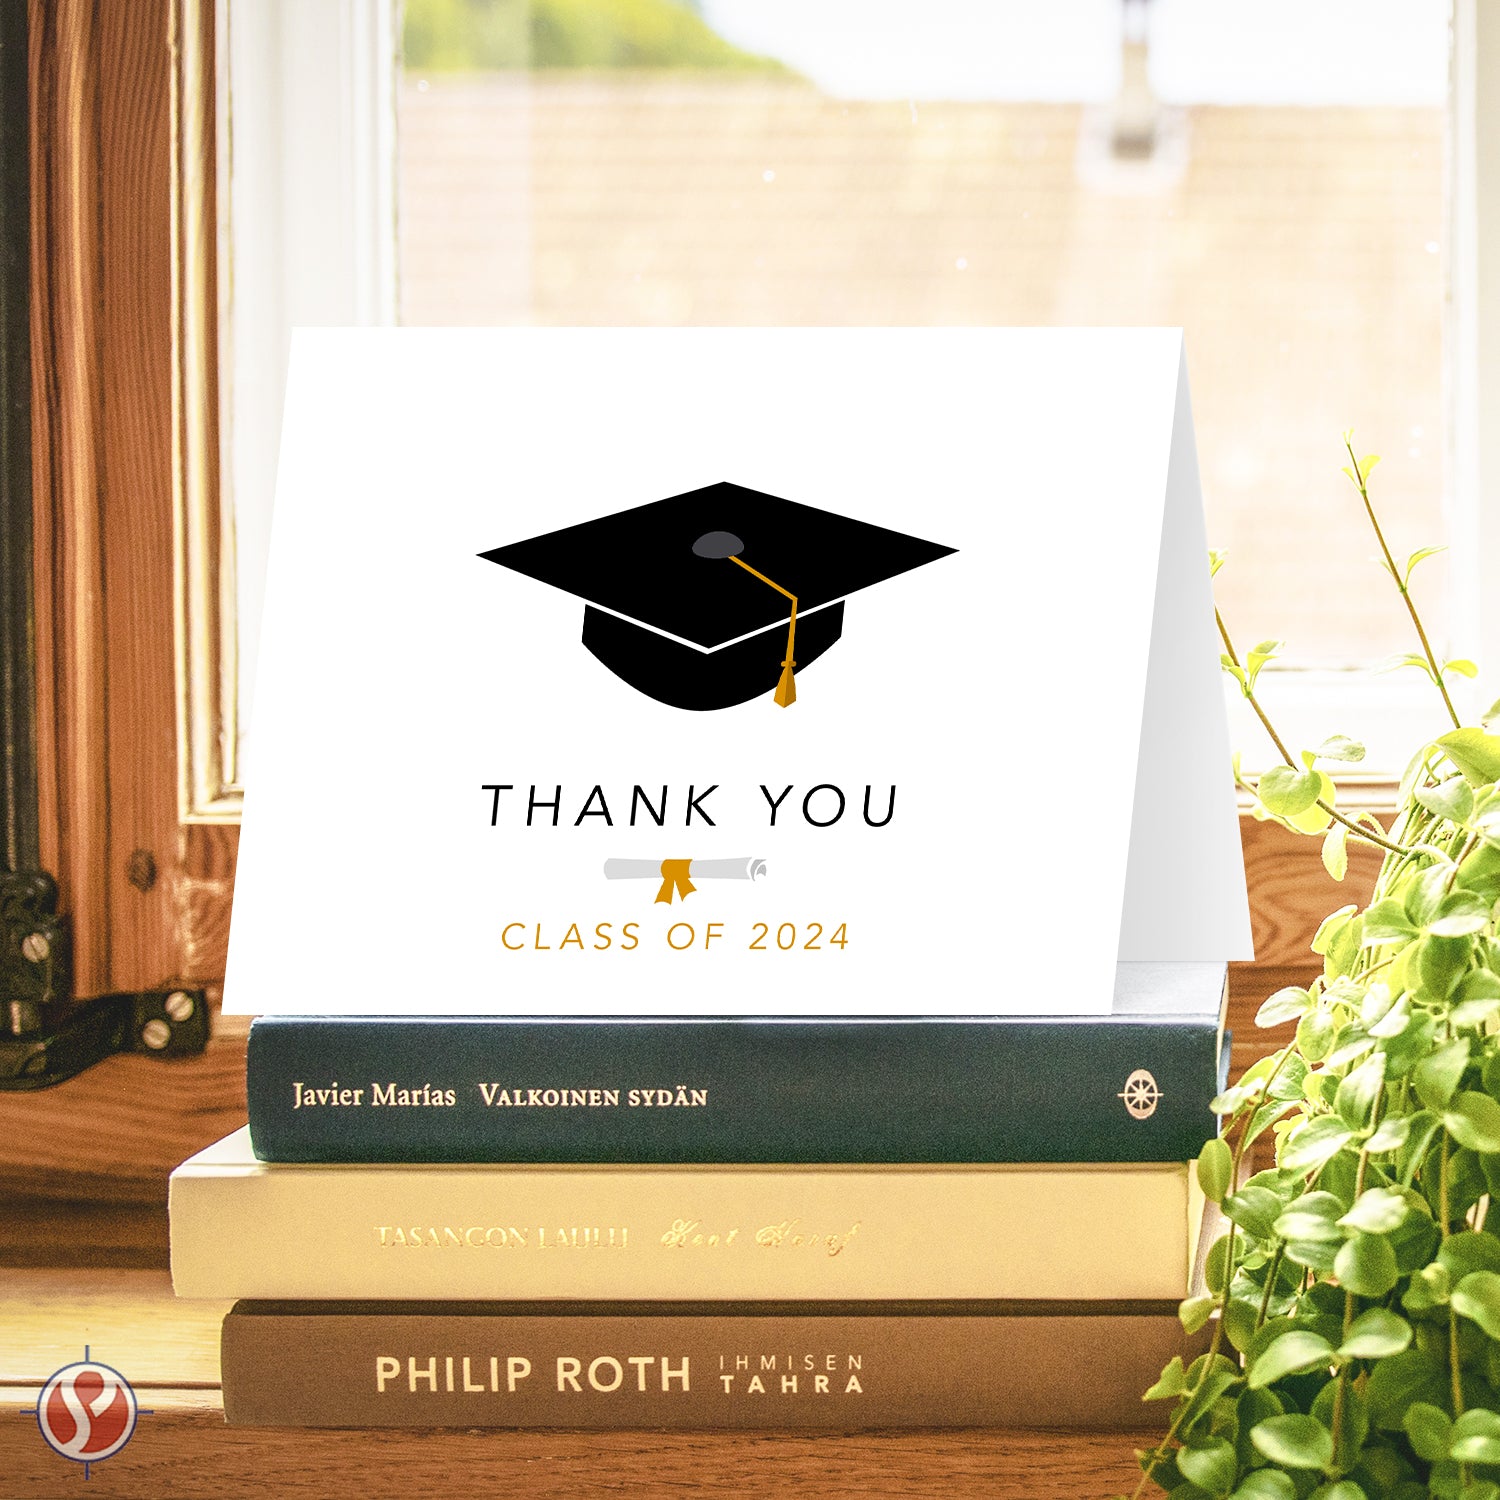 Tarjetas de graduación 2023 - Tarjeta de agradecimiento: una manera linda y elegante de expresar gratitud